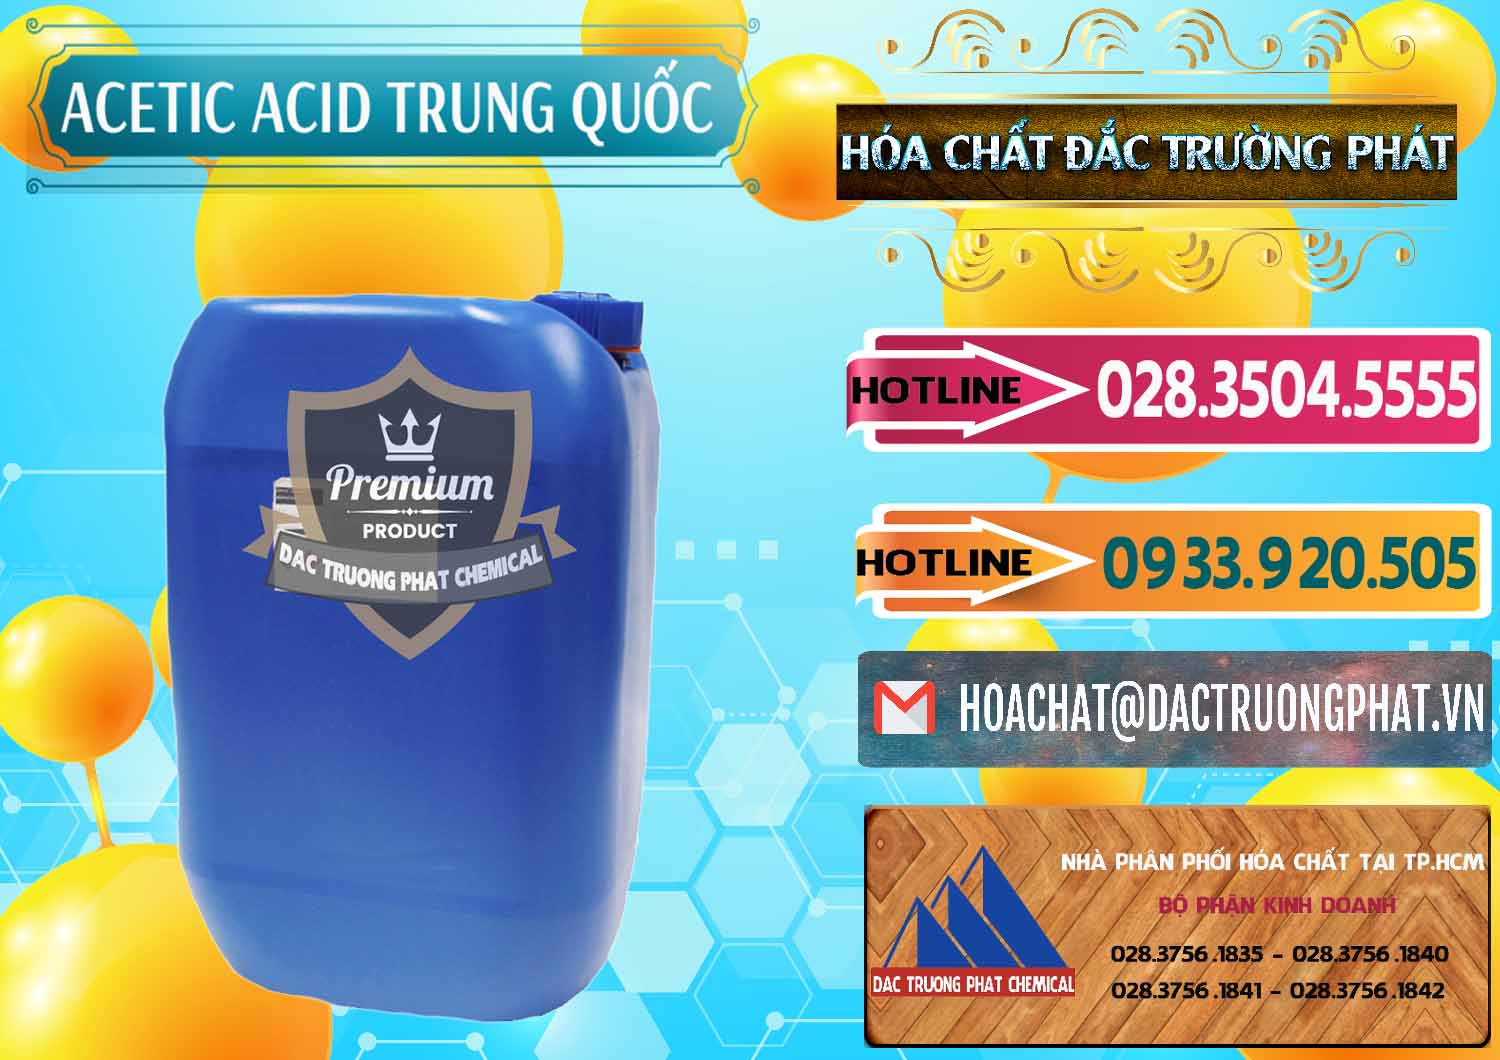 Cty chuyên bán - cung ứng Acetic Acid – Axit Acetic Trung Quốc China - 0358 - Cty chuyên bán _ cung cấp hóa chất tại TP.HCM - dactruongphat.vn